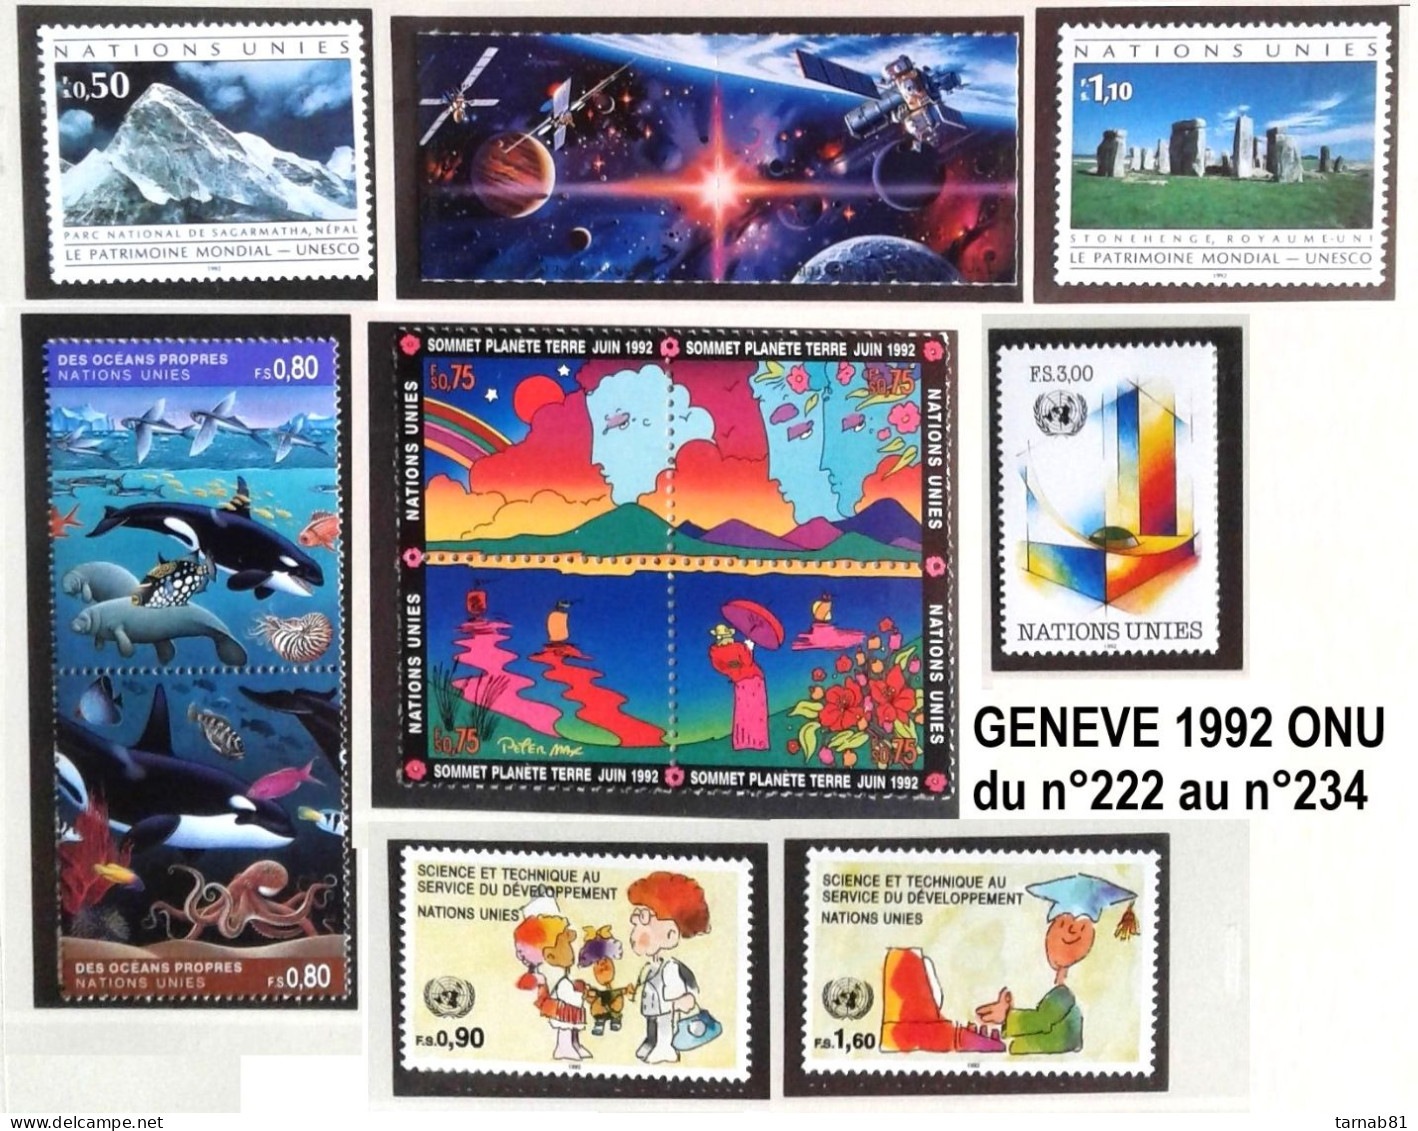 ONU Genève années complètes 1969-1979 1980 -1989 1990 1991 1992 1993 1994 1995 1996 1997 1998 1999 2000